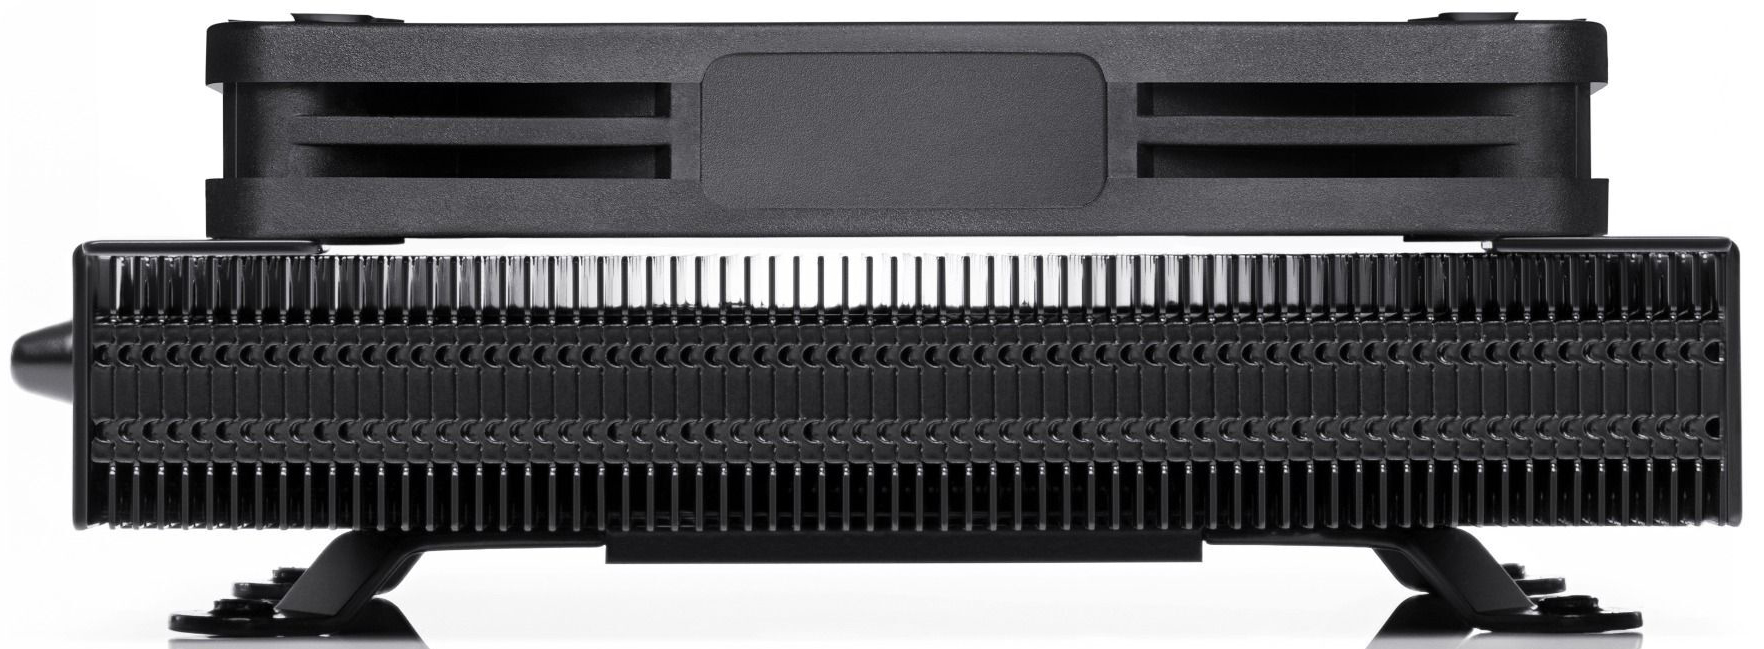 Noctua - Cooler CPU Noctua NH-L9a-AM5 chromax.black Low Profile 92mm